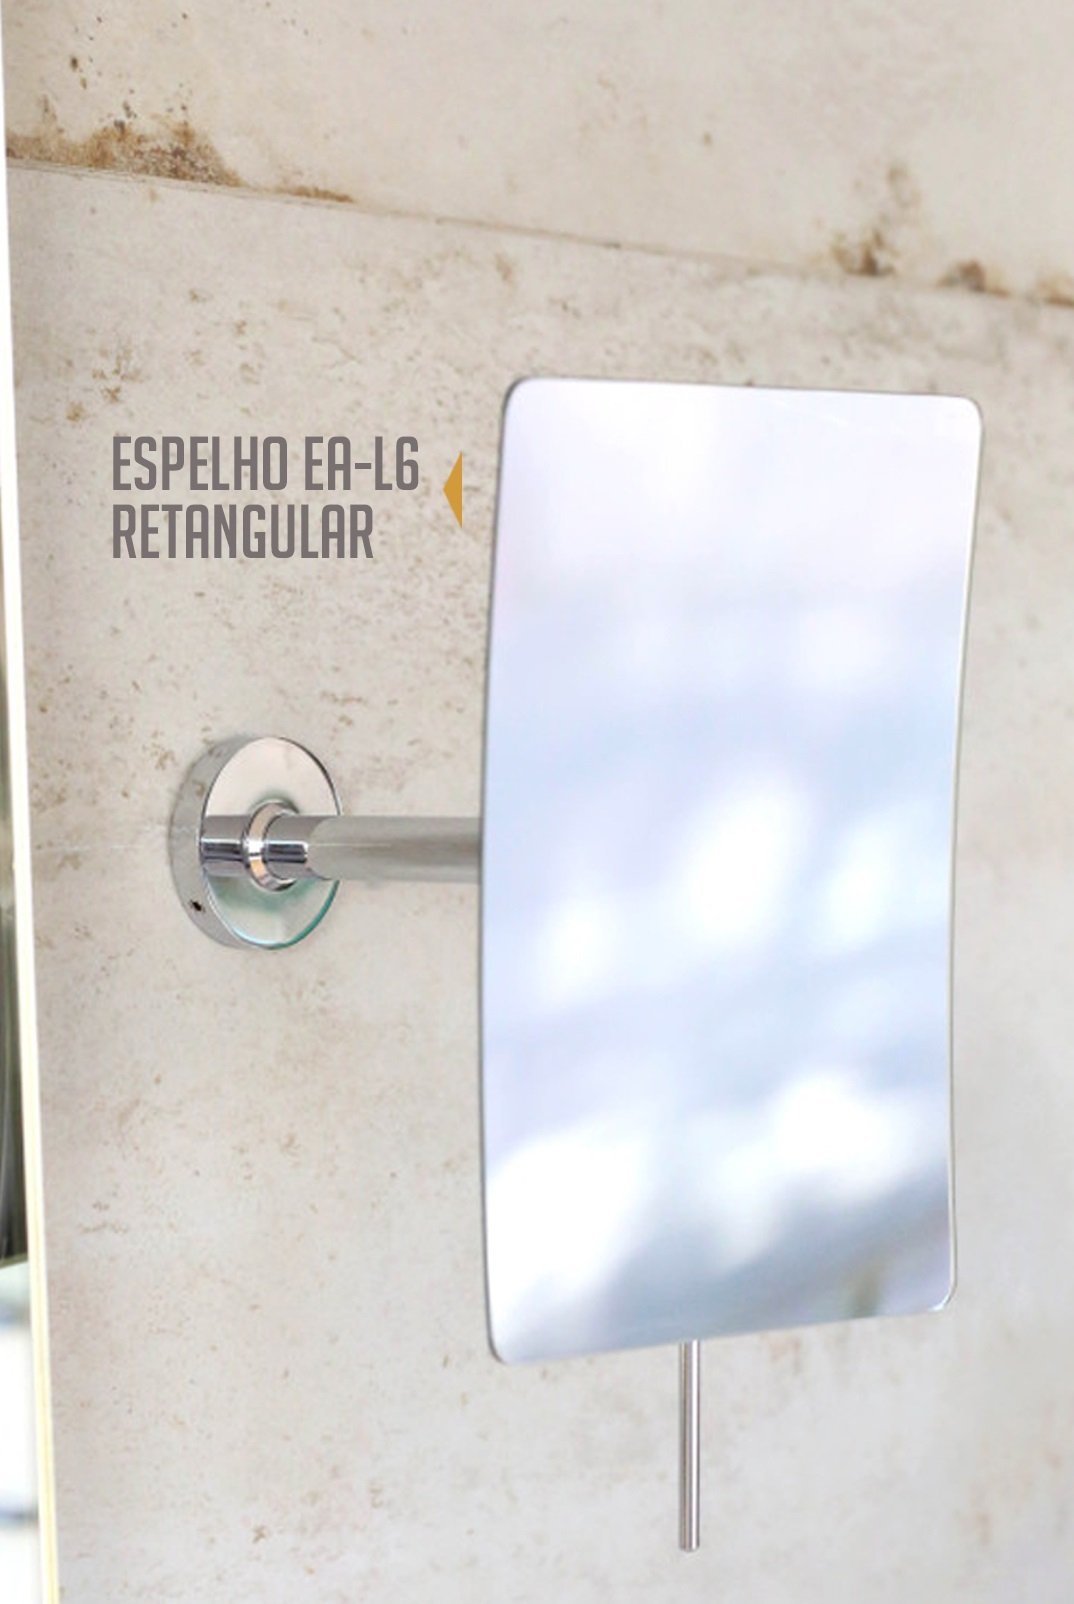 Espelho AE-L 6 - Retangular - E6530 - Cromado - 3